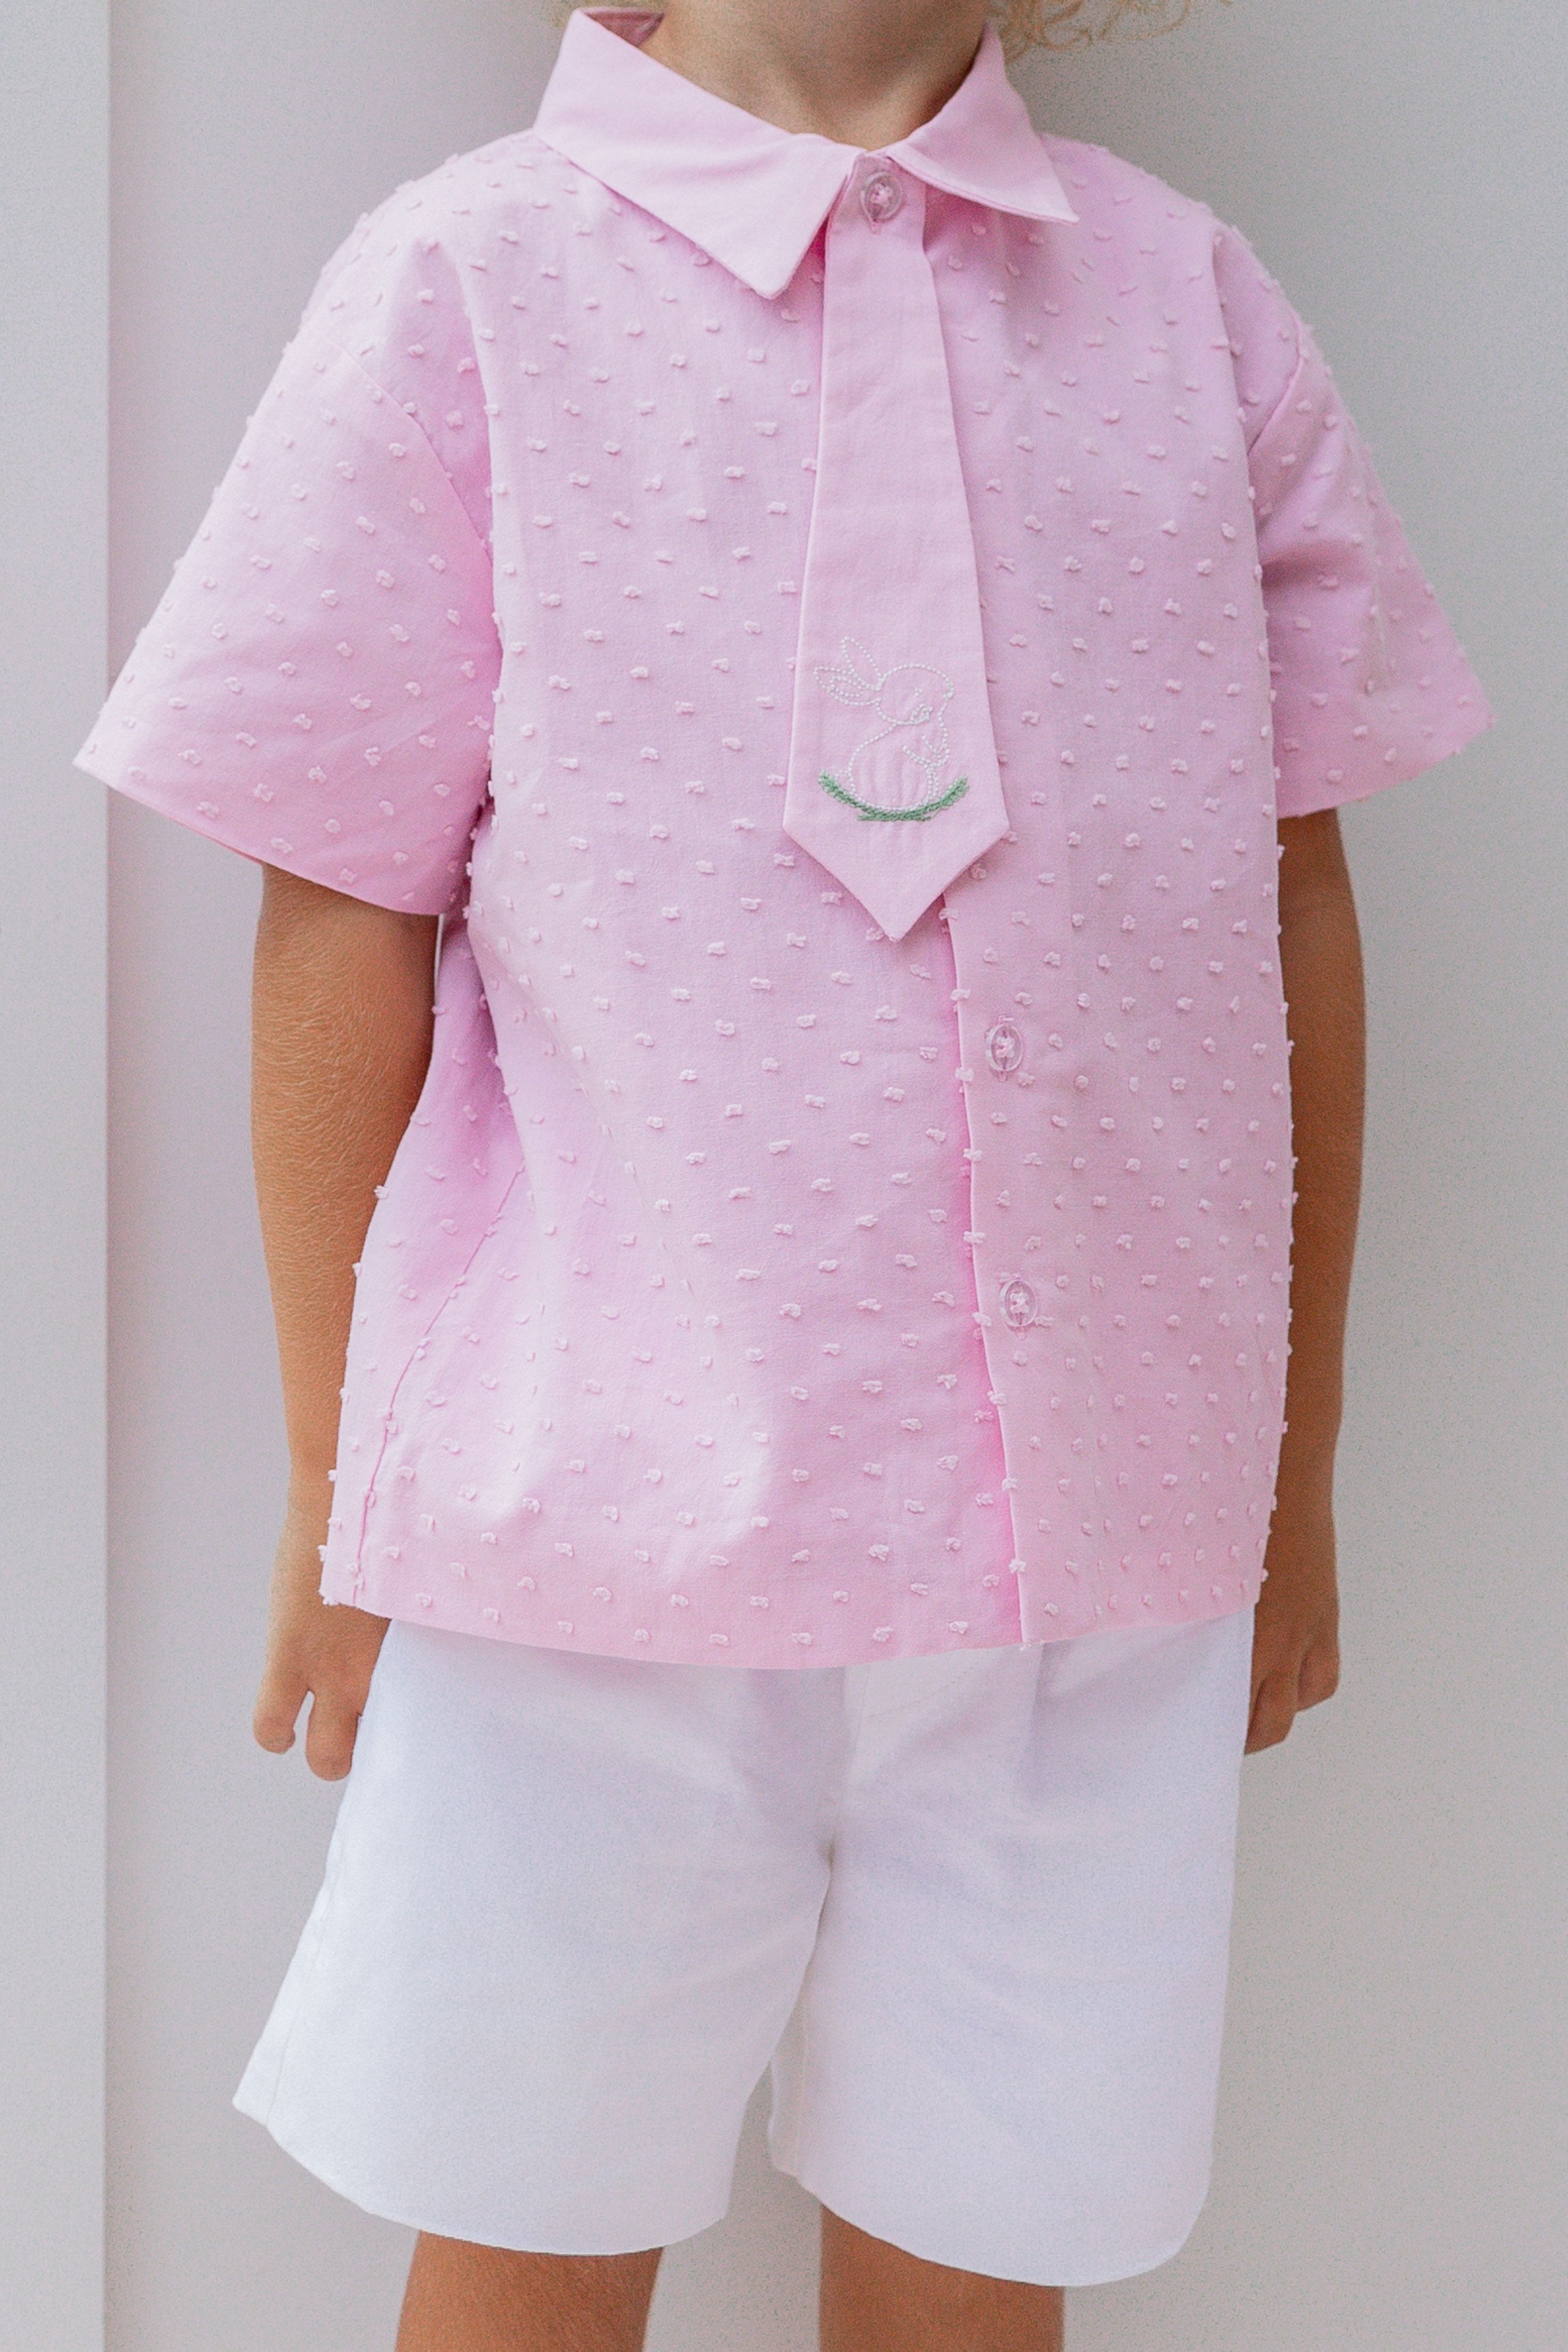 Bunny Hop Shirt (Pink)